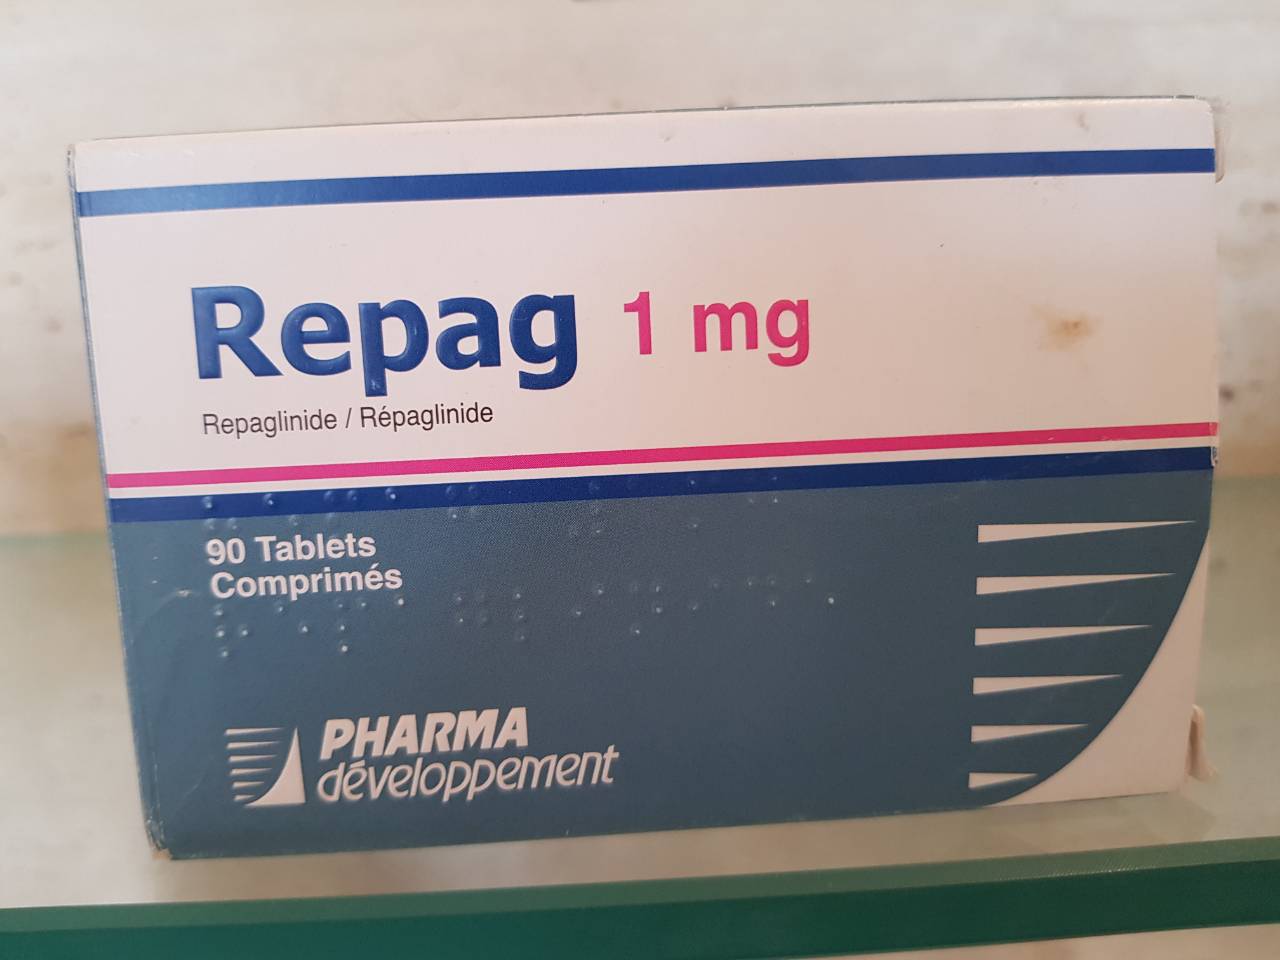 Repag 1 mg